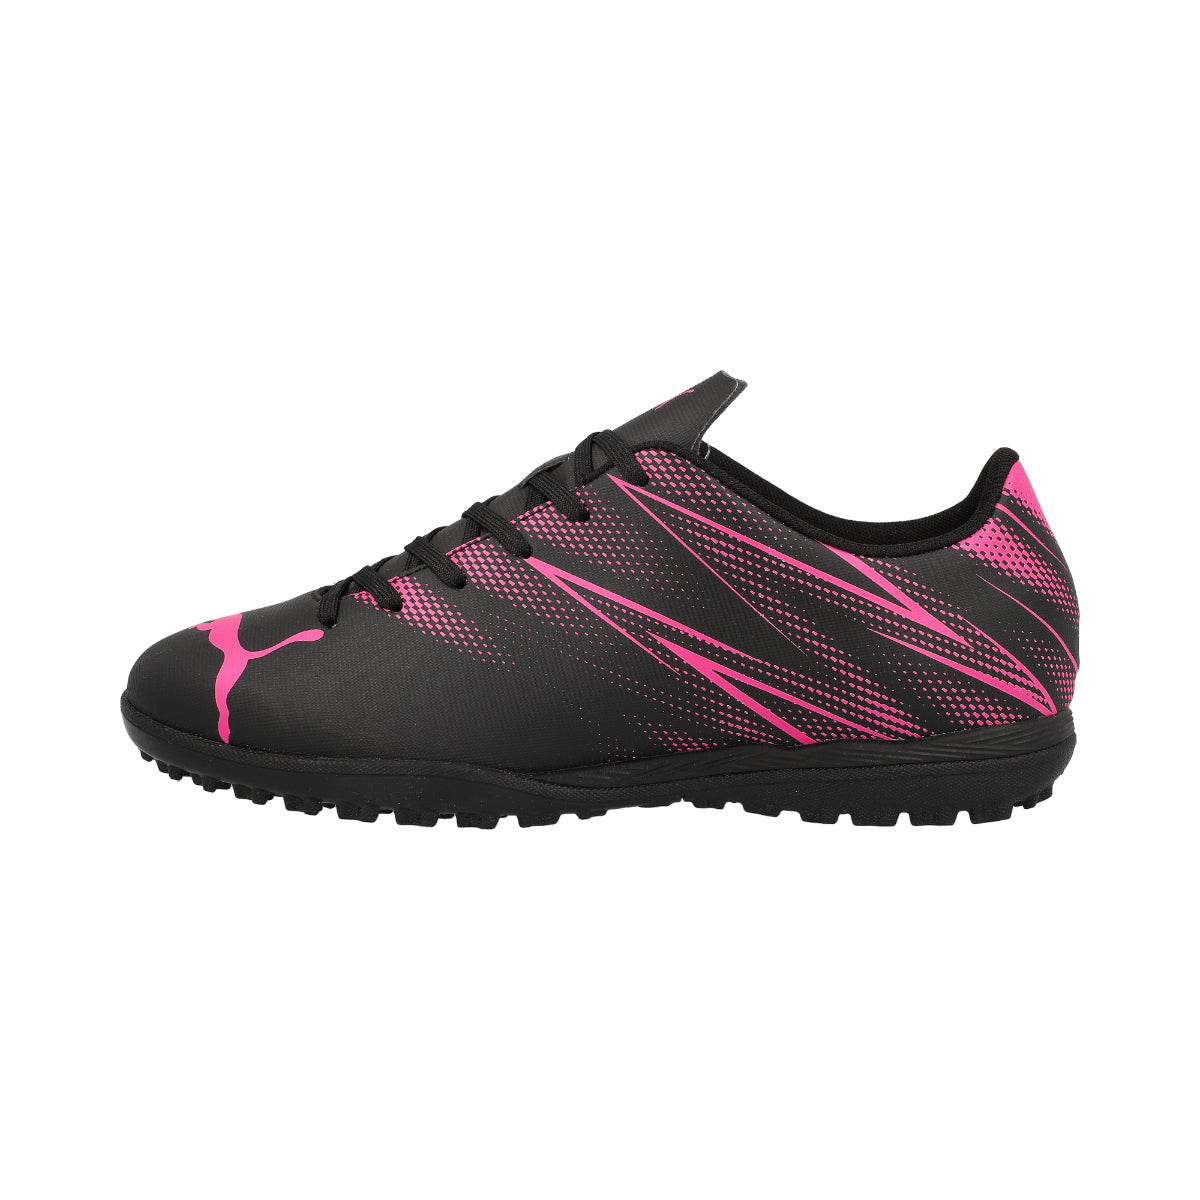 Puma Attacanto Junior TT Football Boots - 5 - Black/Pink